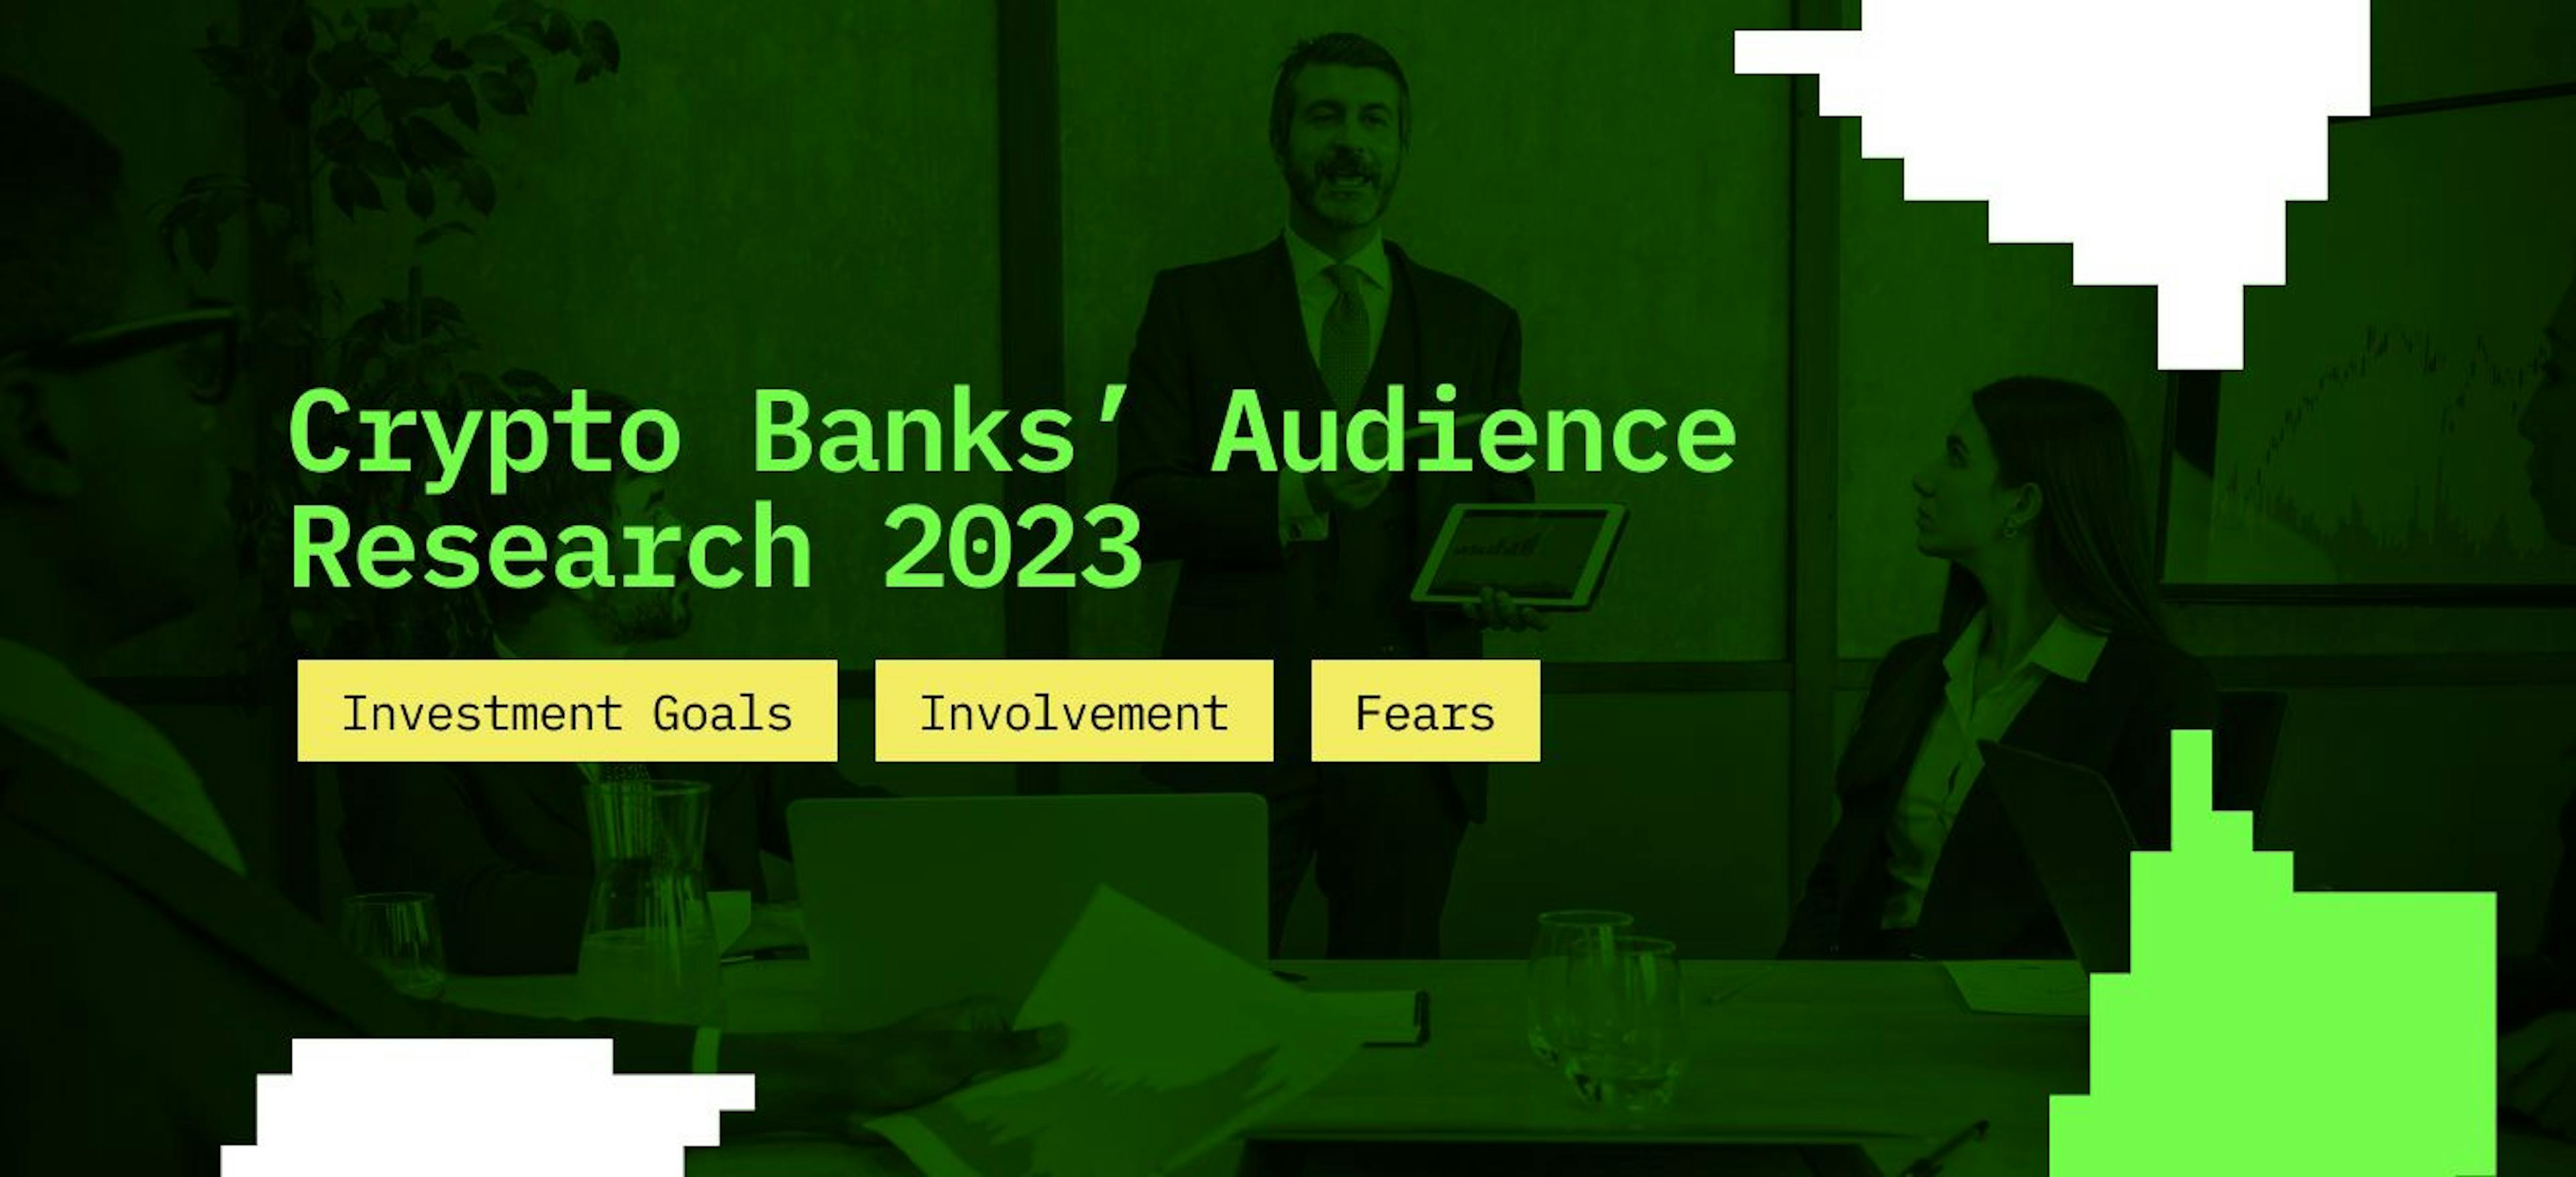 featured image - Recherche sur l'audience des banques cryptographiques 2023 : objectifs d'investissement, implication et craintes